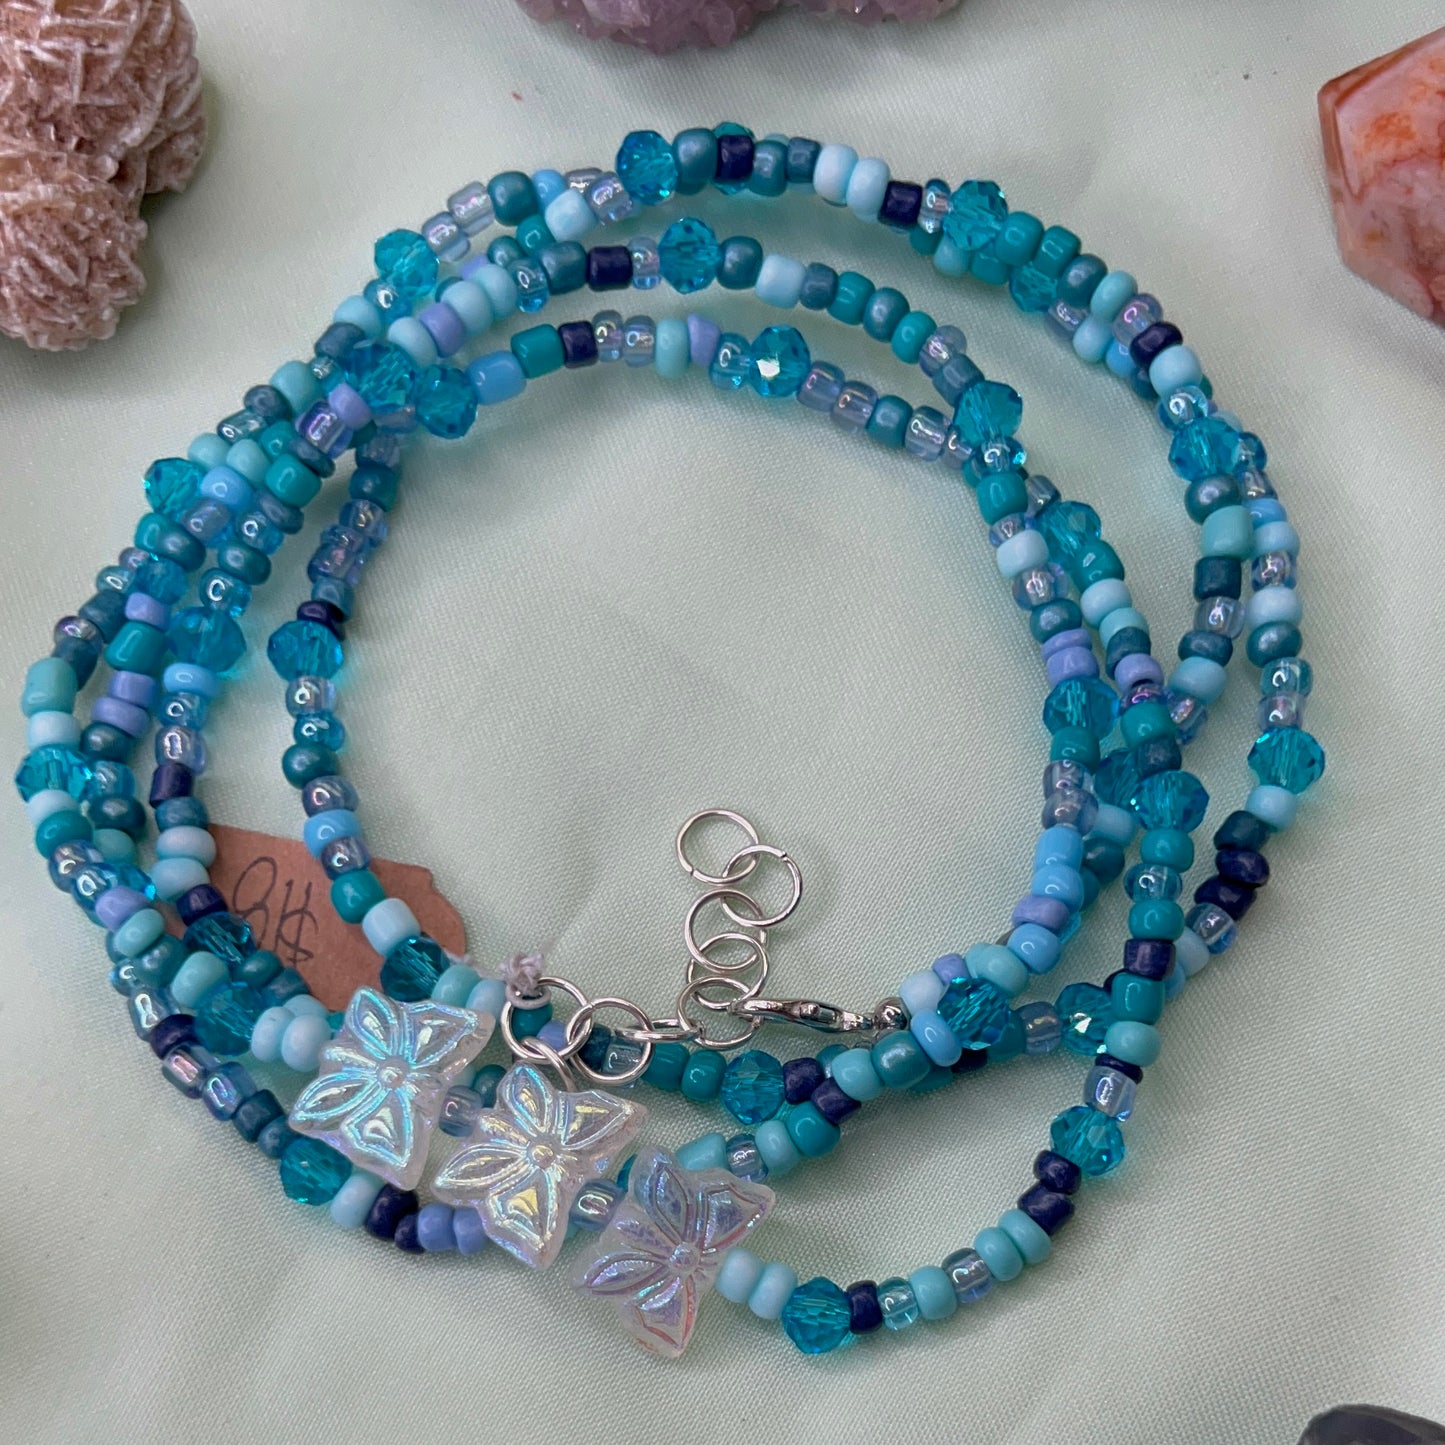 Northern Blue Waist Beads